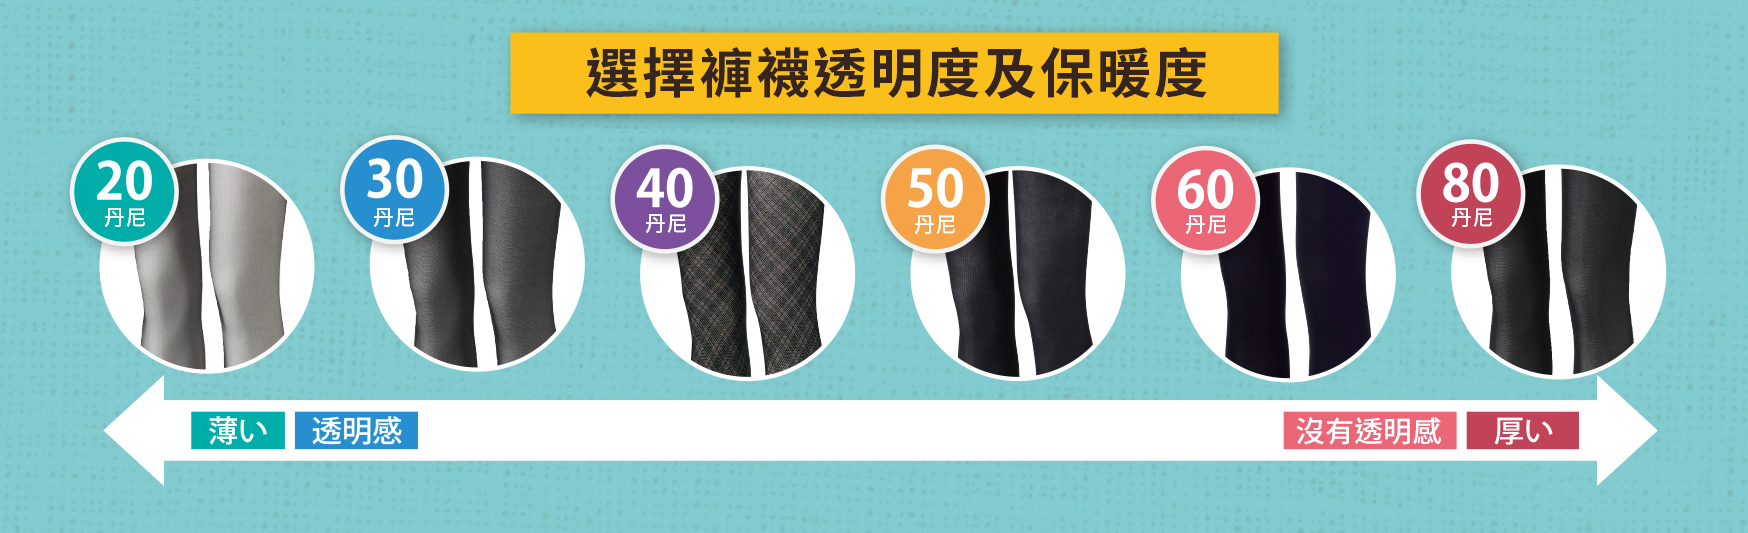 選擇褲襪透明度及保暖度